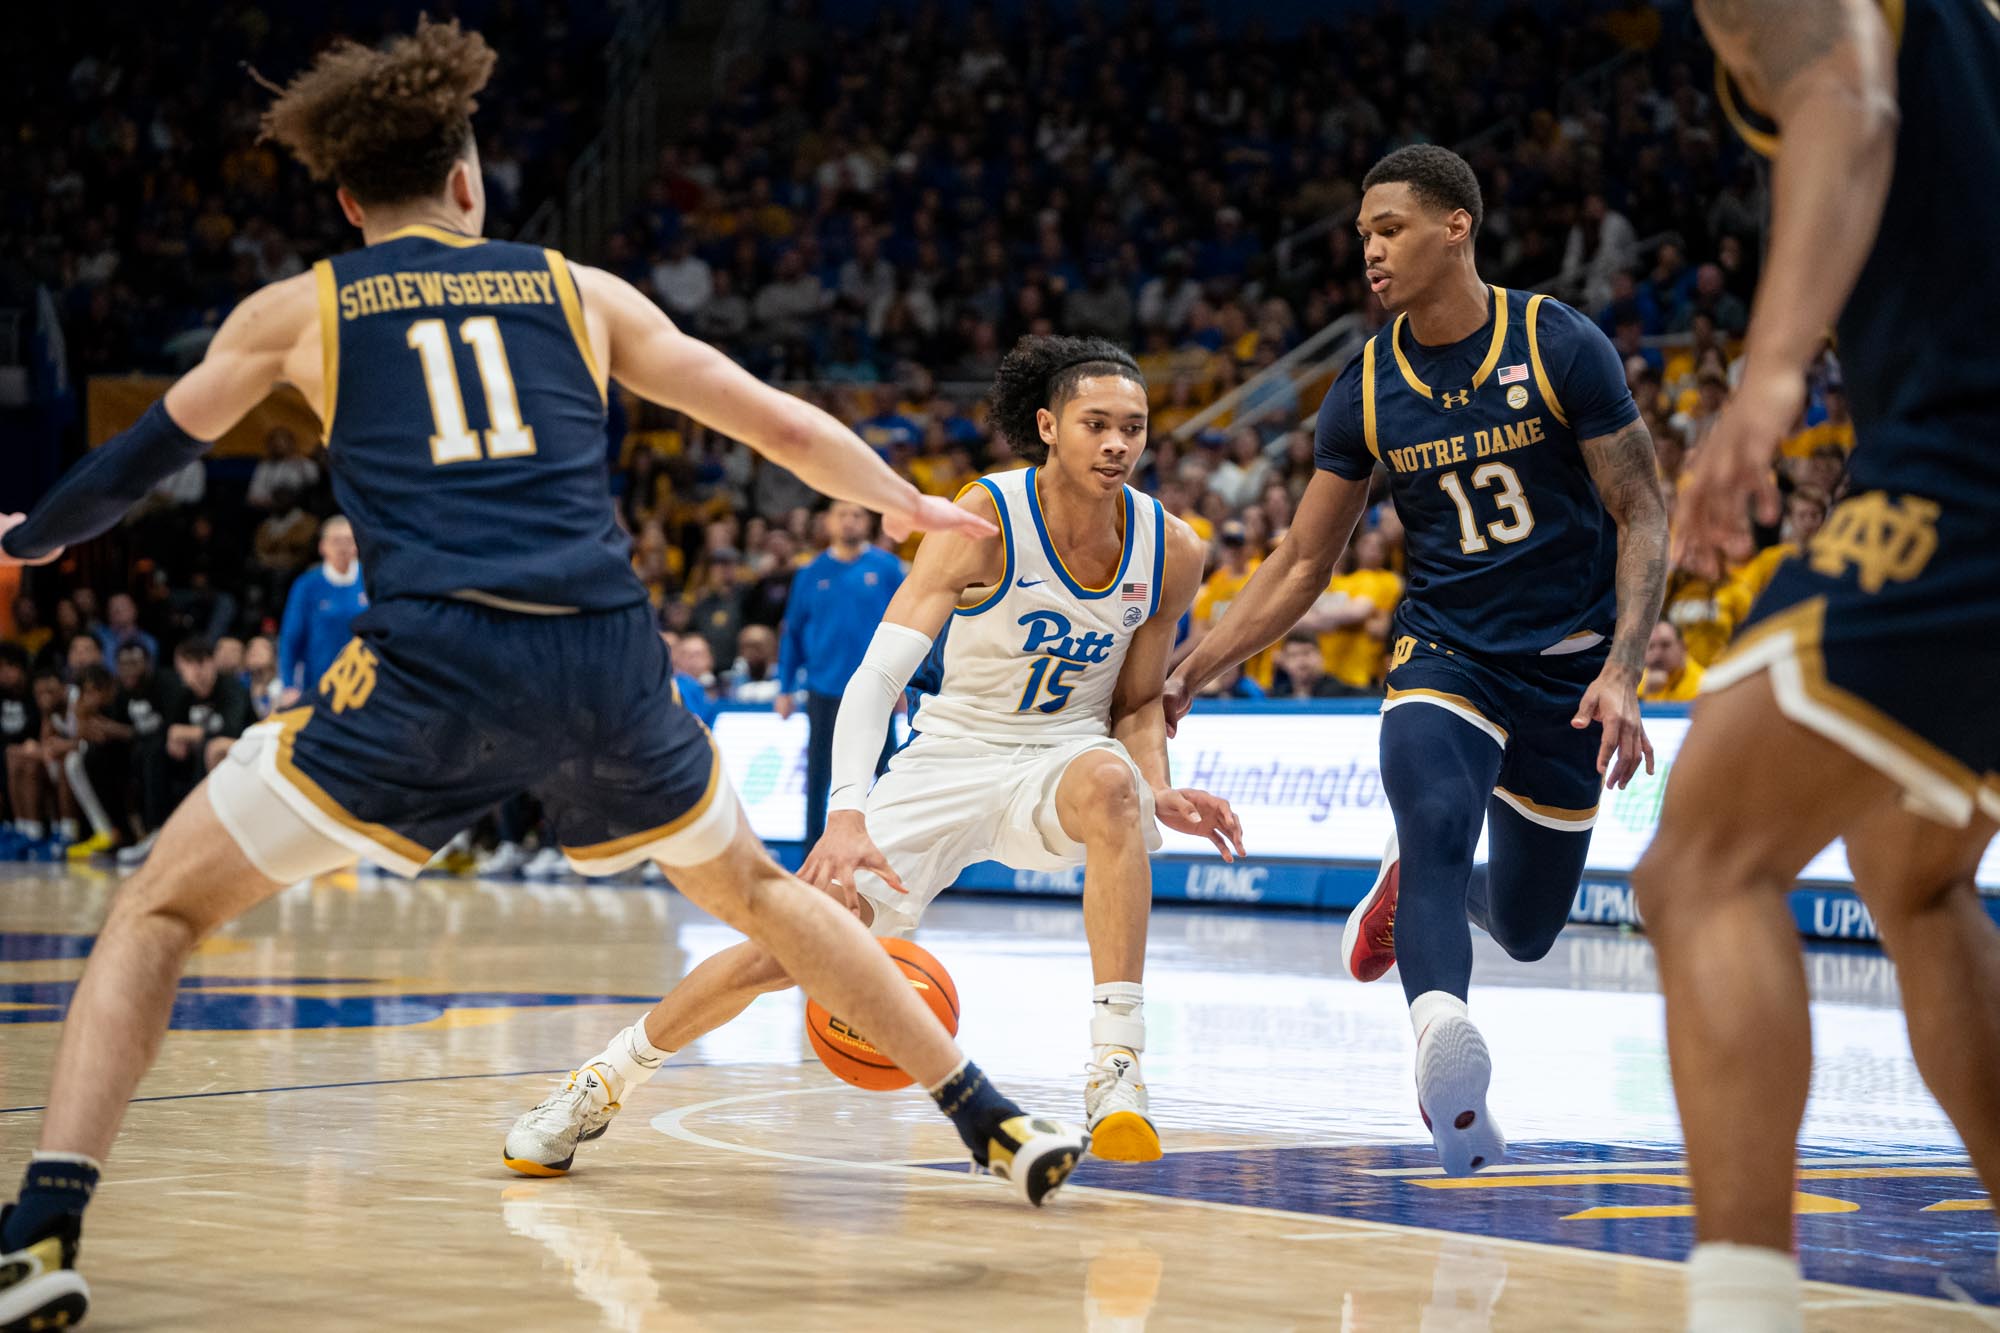 Pitt men's basketball gains momentum against Notre Dame - The Pitt